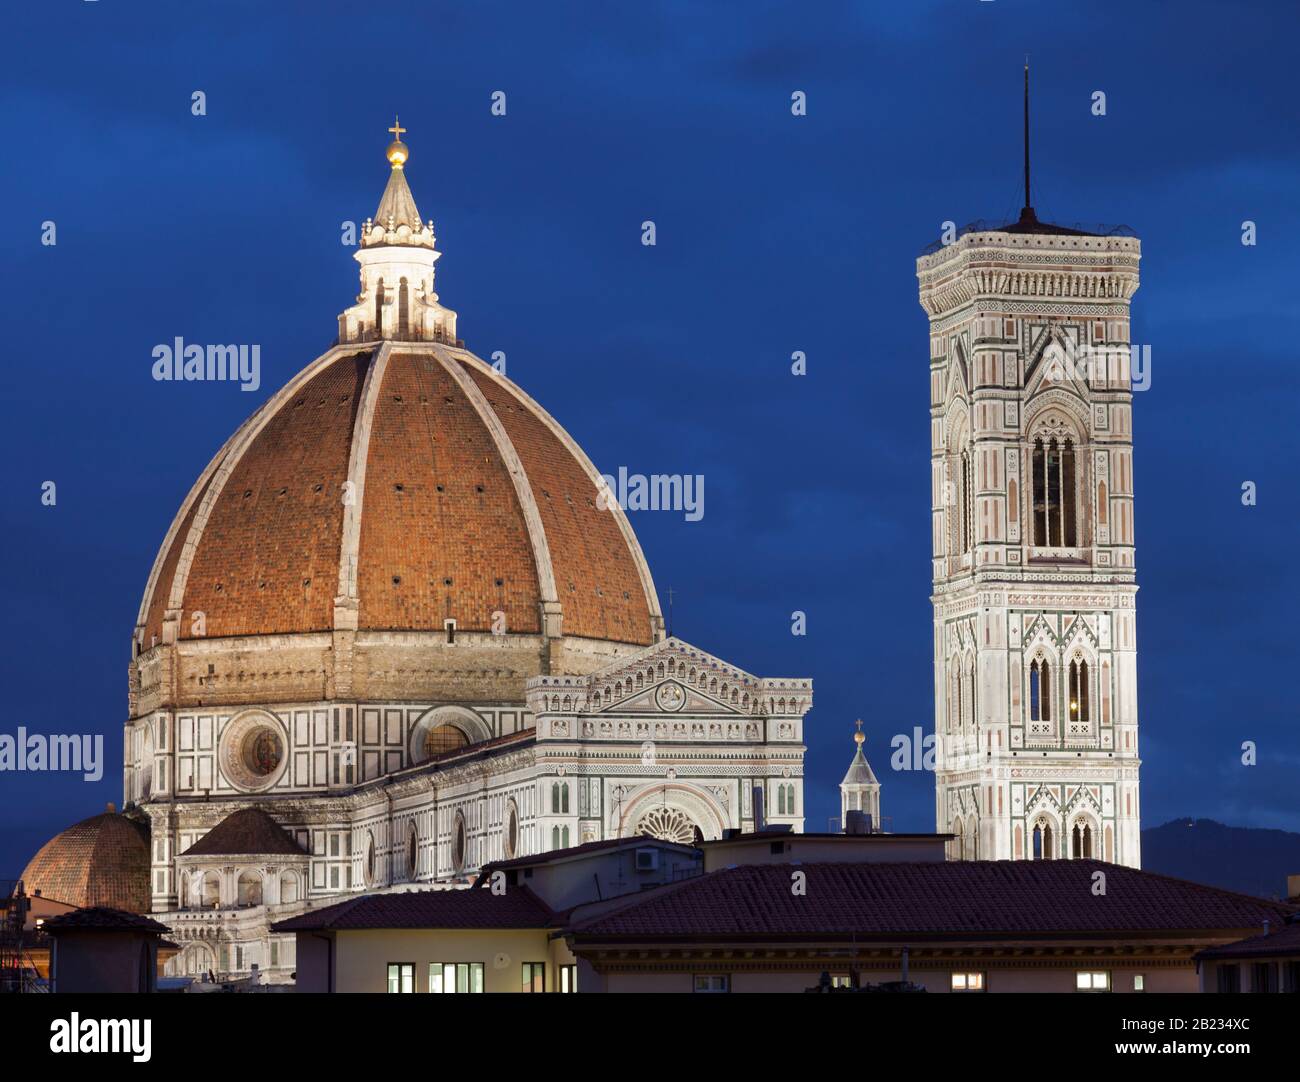 Vue de nuit sur le Duomo de Firenze. Toscane, Italie Banque D'Images